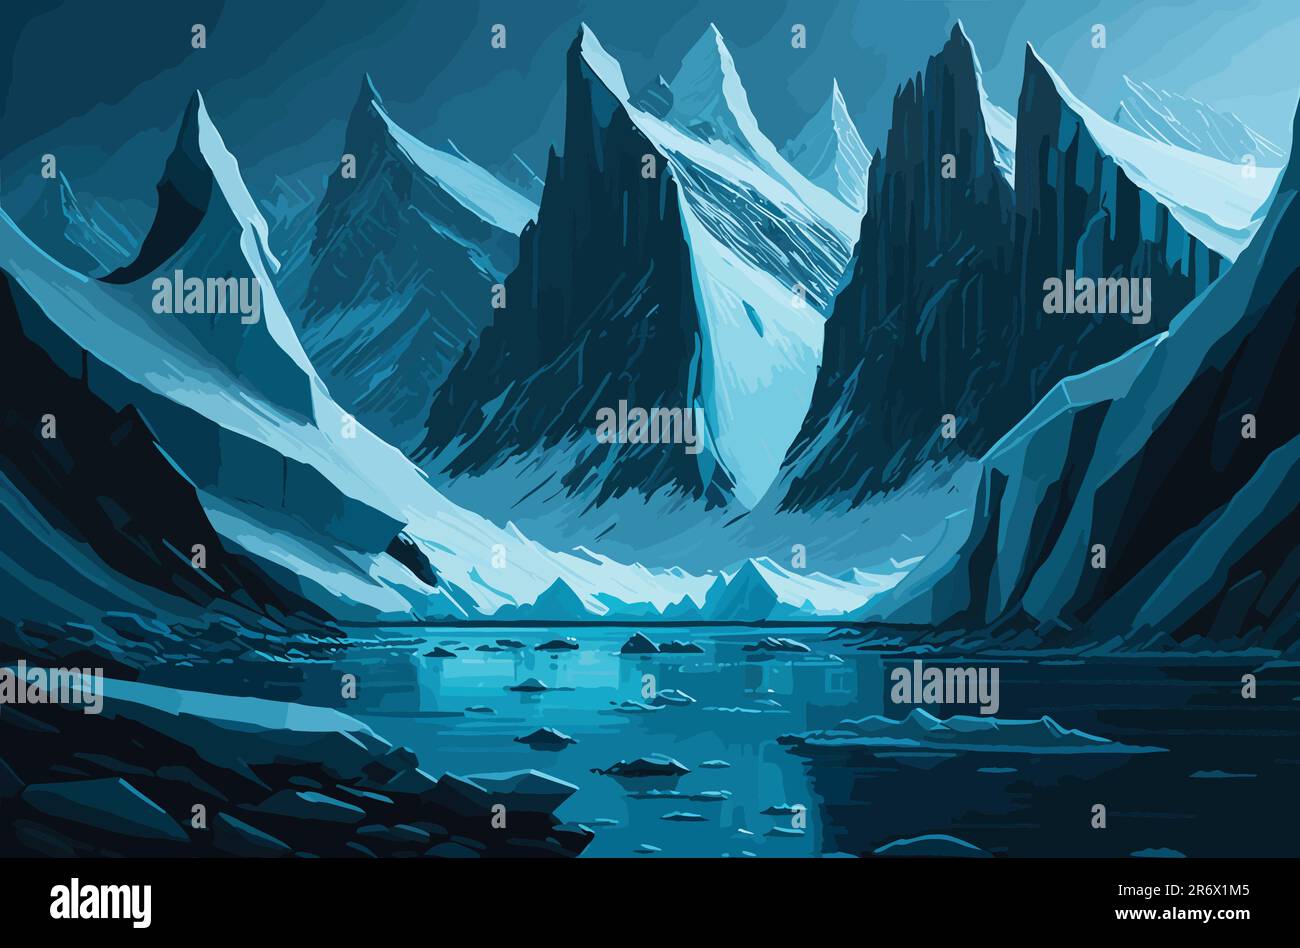 Un paesaggio remoto e ghiacciato nell'Artico o Antartico, caratterizzato da imponenti iceberg, un oceano incontaminato e ghiacciato, e uno scorcio di fauna selvatica polare come Illustrazione Vettoriale